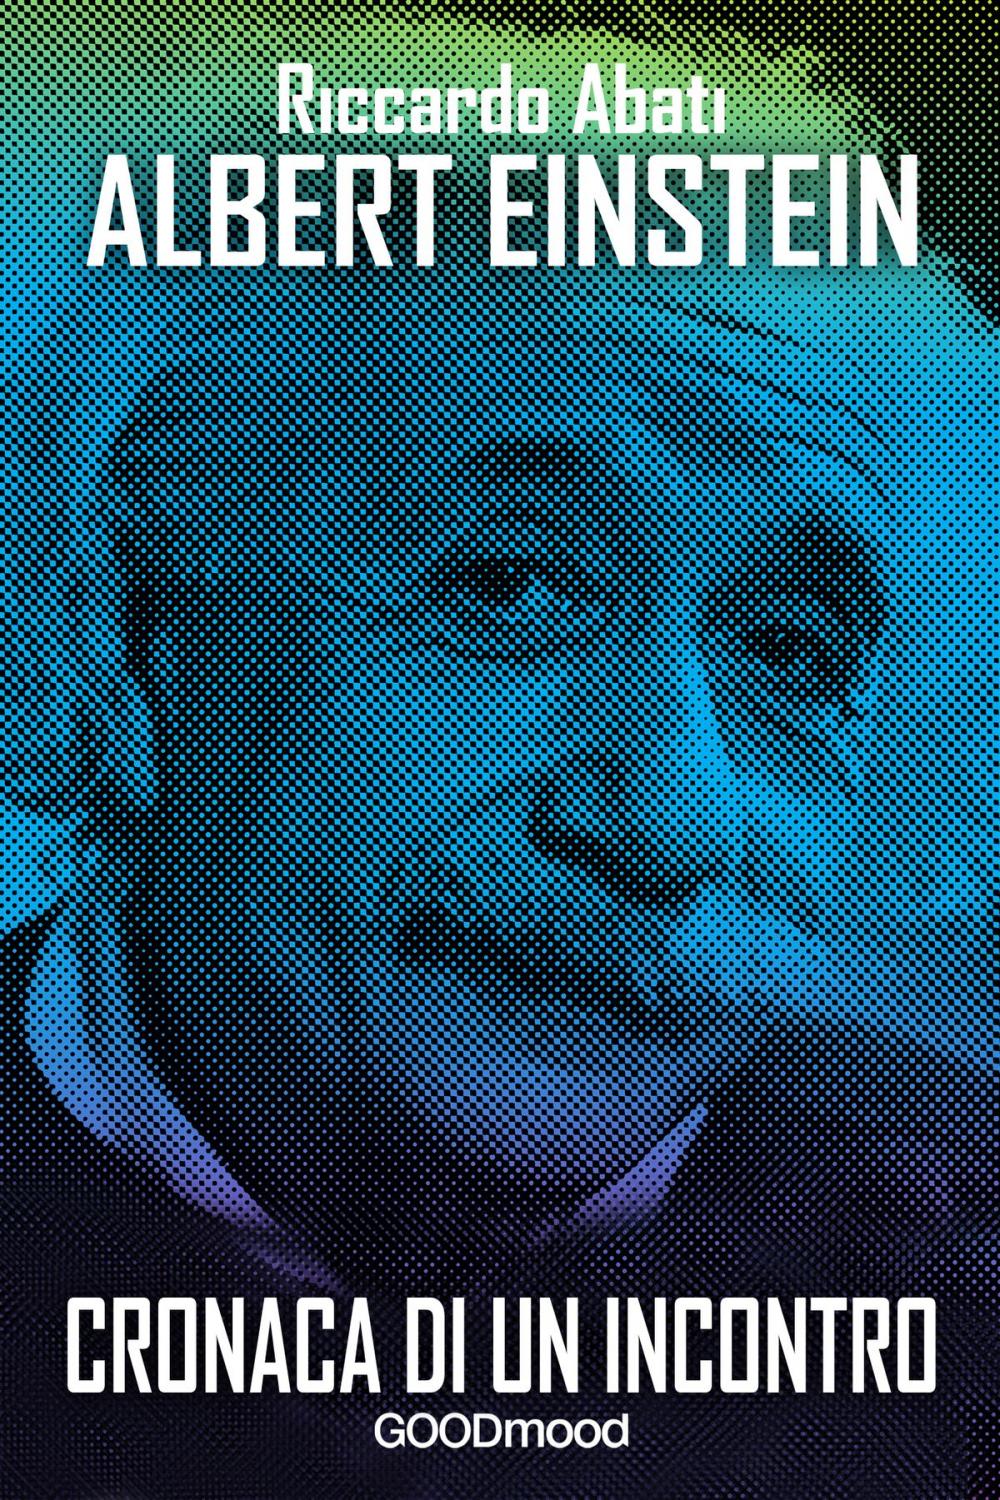 Big bigCover of Albert Einstein